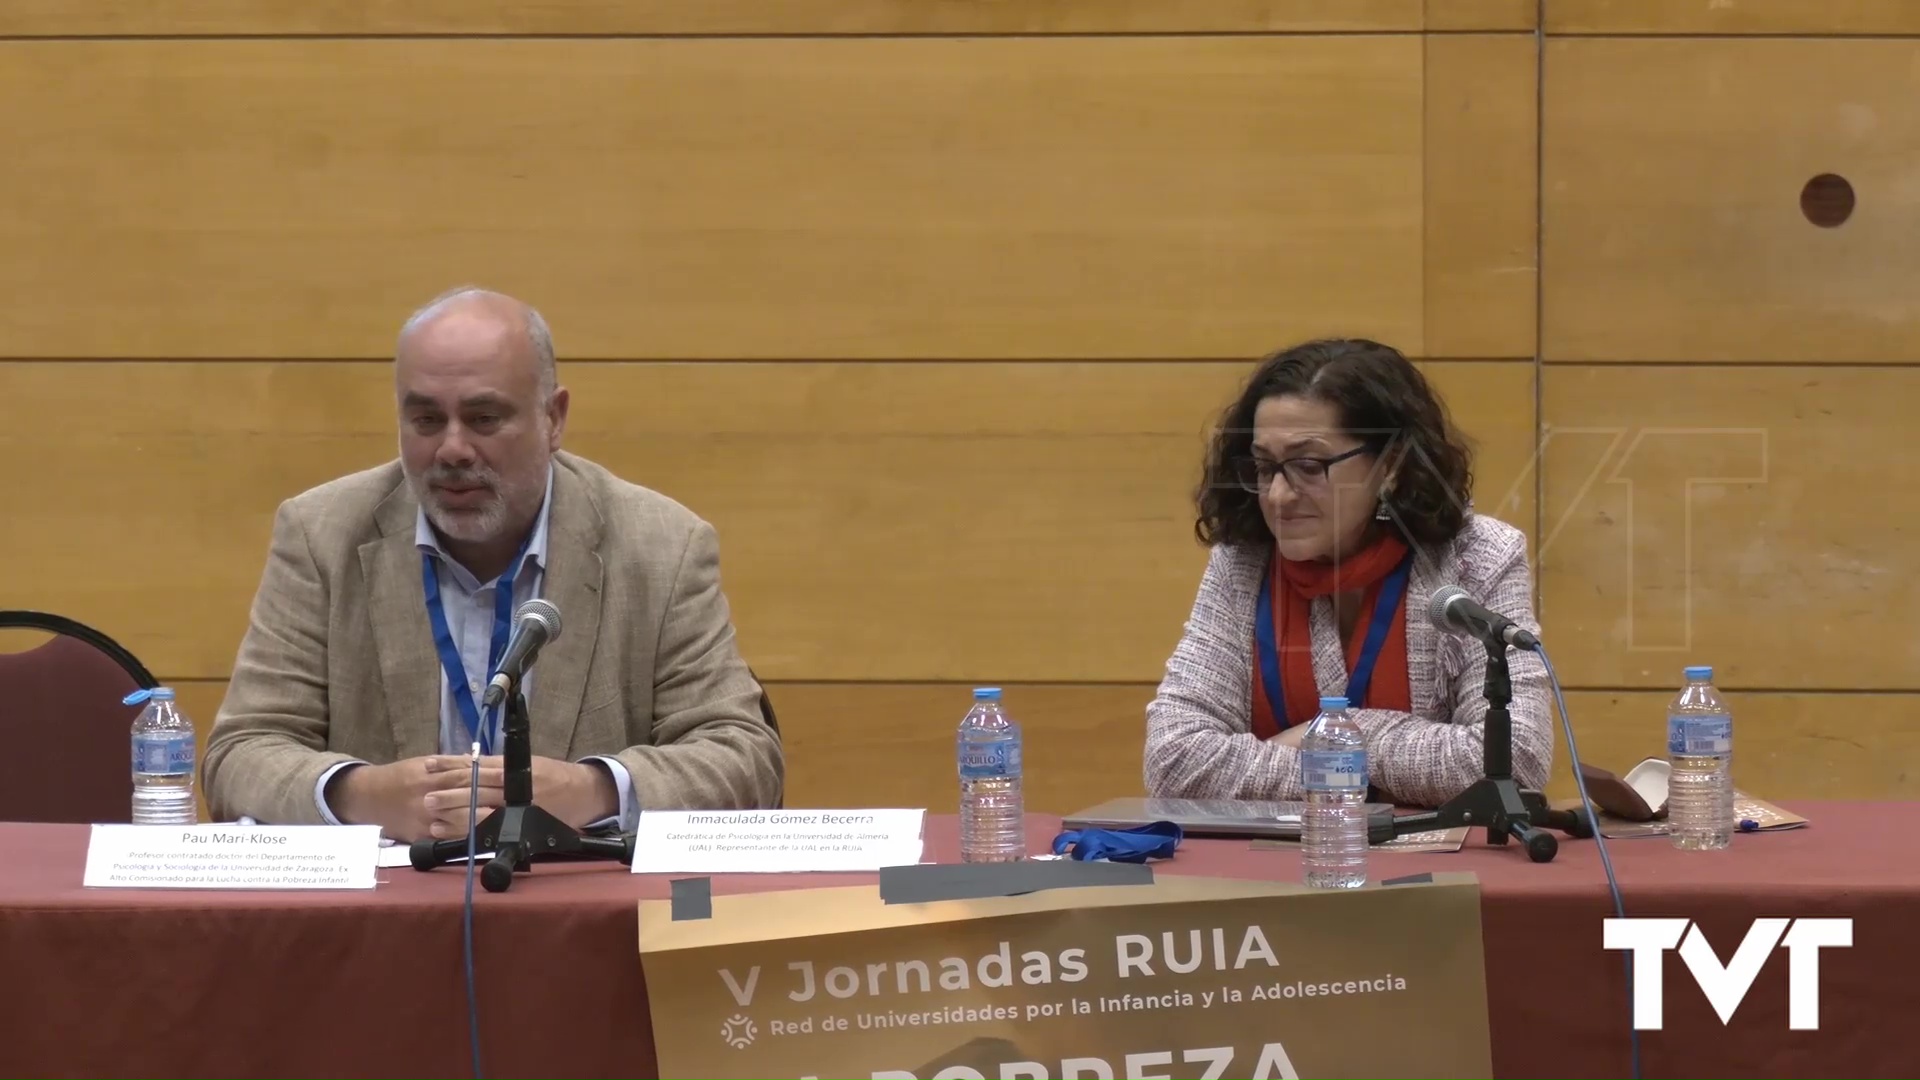 Integros - Jornadas RUIA - Conferencia Pau Marí-Klose